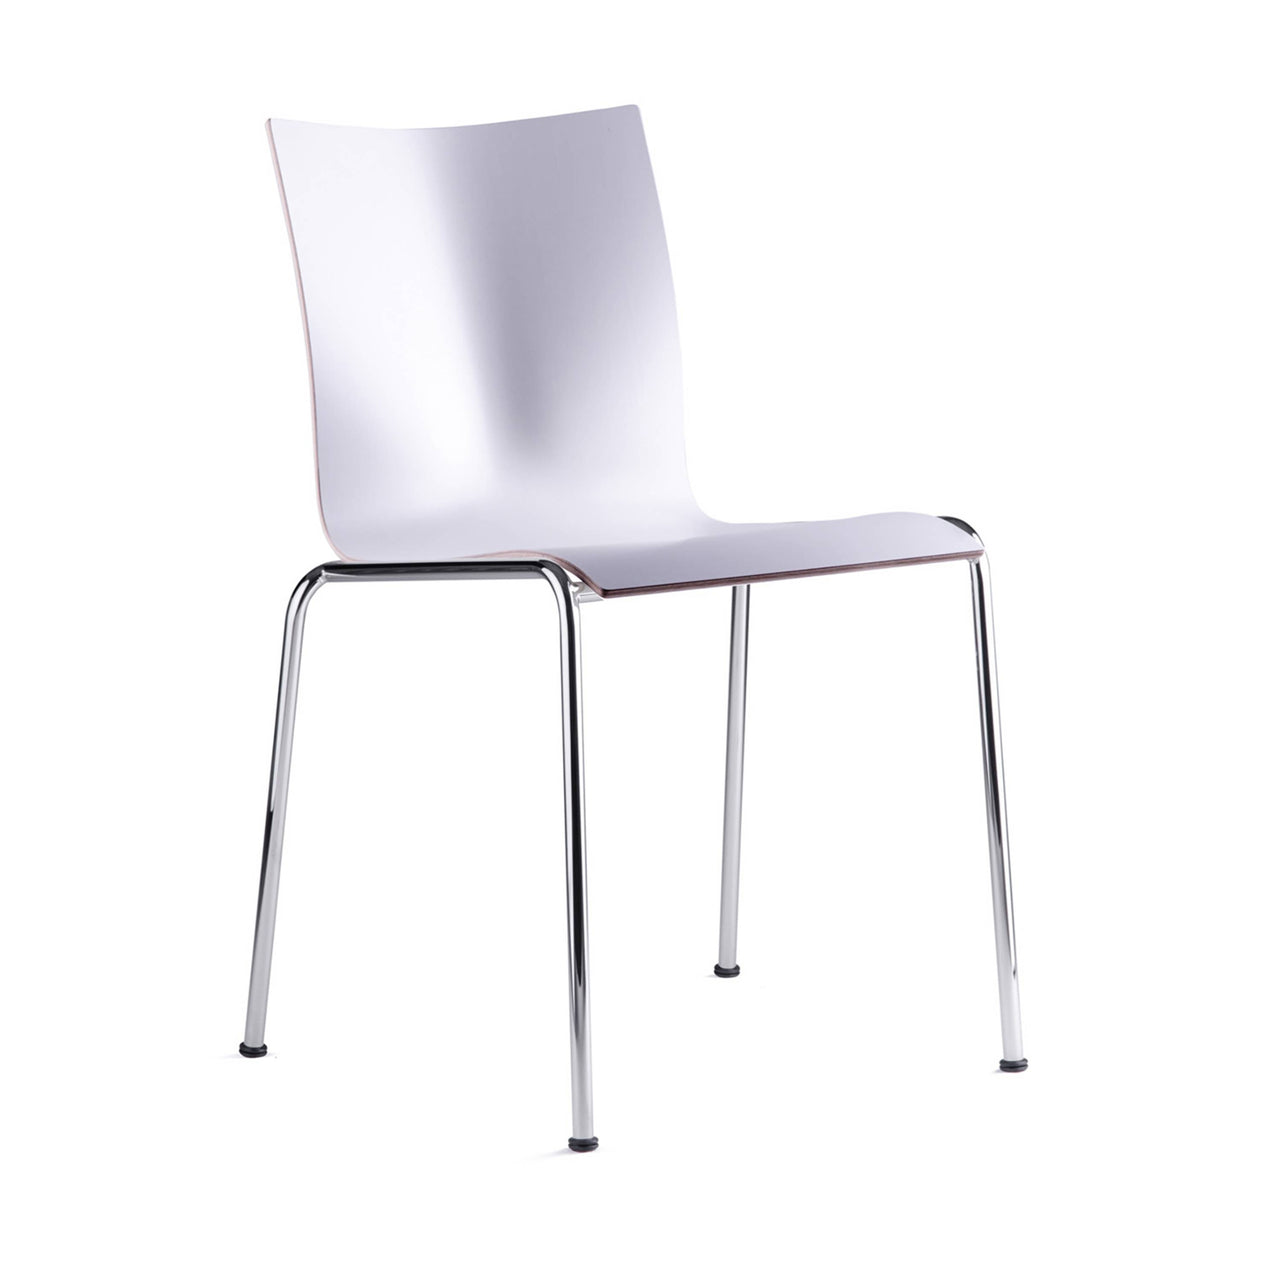 Chairik 101 Chair: Melamine + White